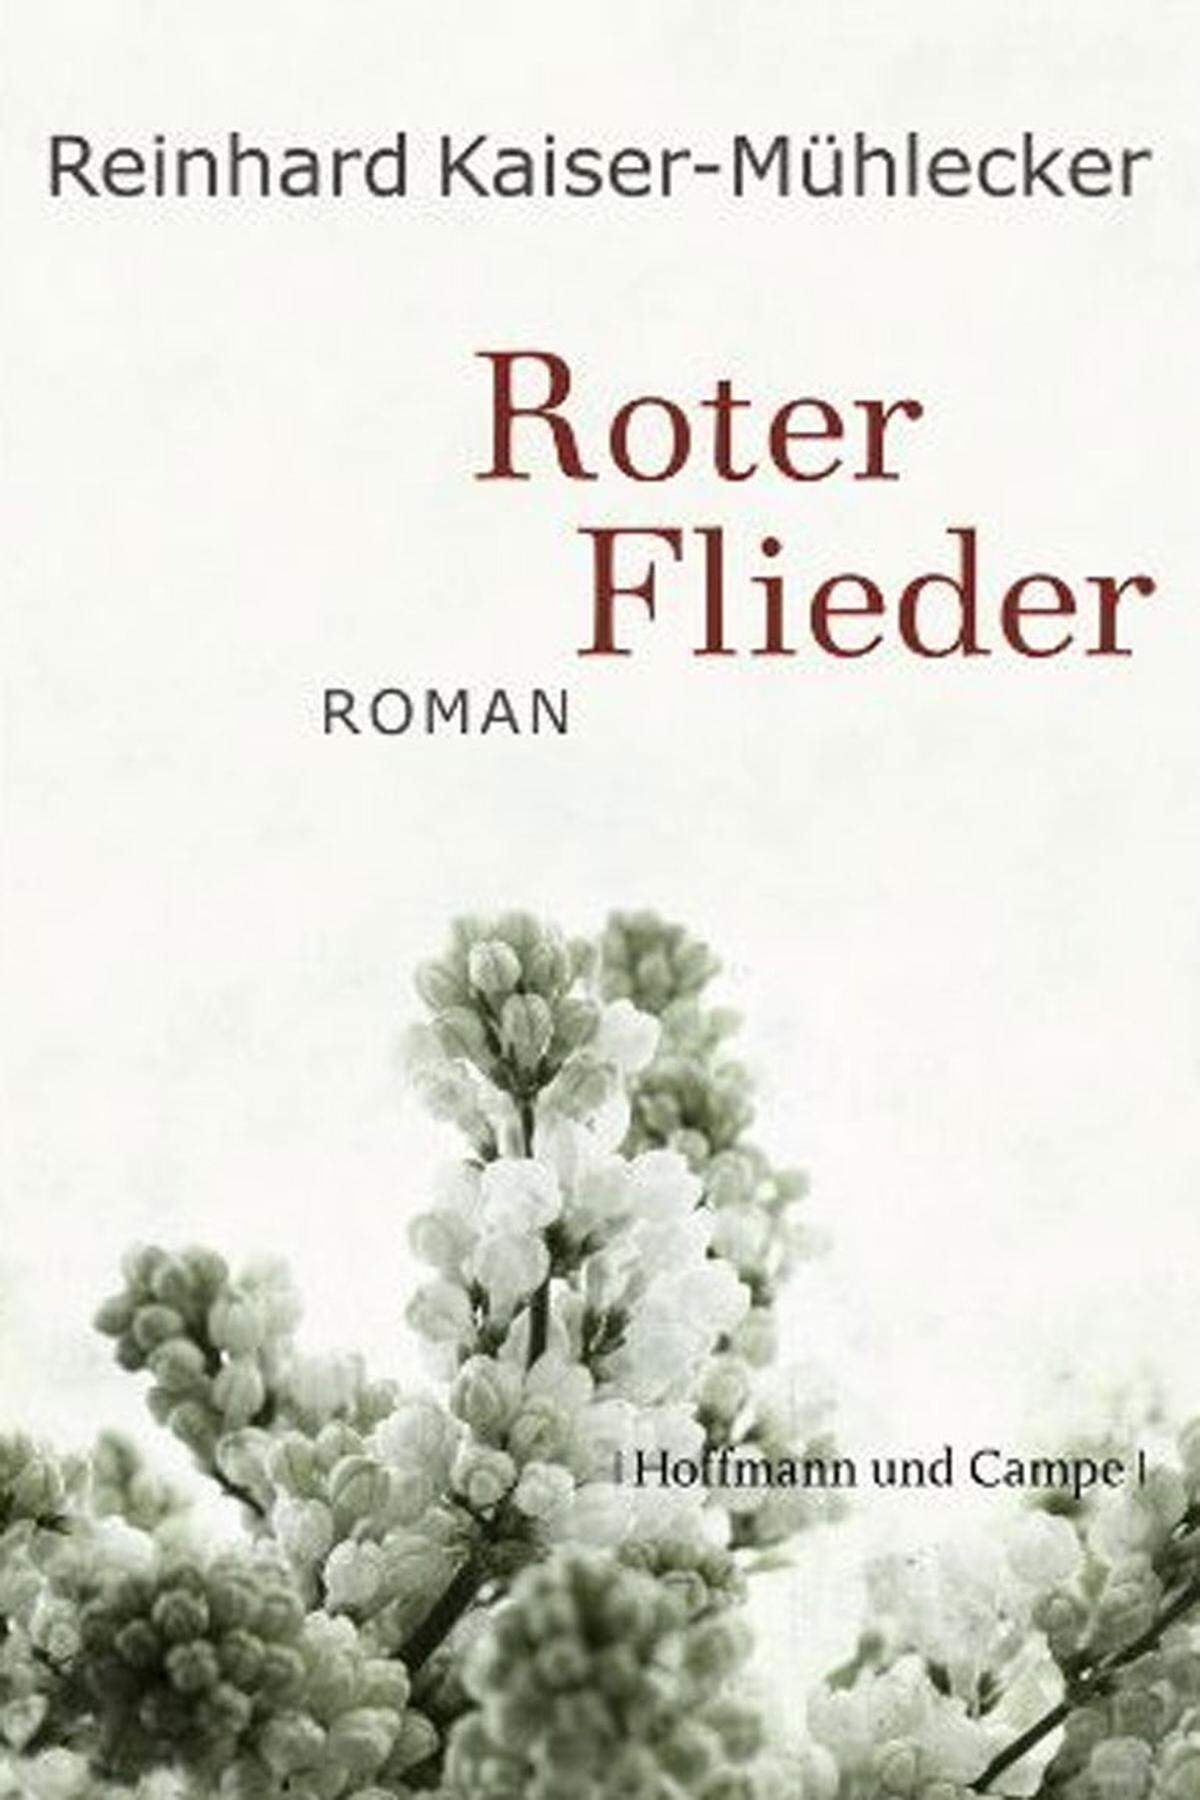 Hoffmann & Campe bringt im September auch Reinhard Kaiser-Mühleckers vierten Roman "Roter Flieder", angekündigt als ein "gewaltiger Roman, geformt aus der Geschichte des zwanzigsten Jahrhunderts, seinen Hoffnungen und Wirren".